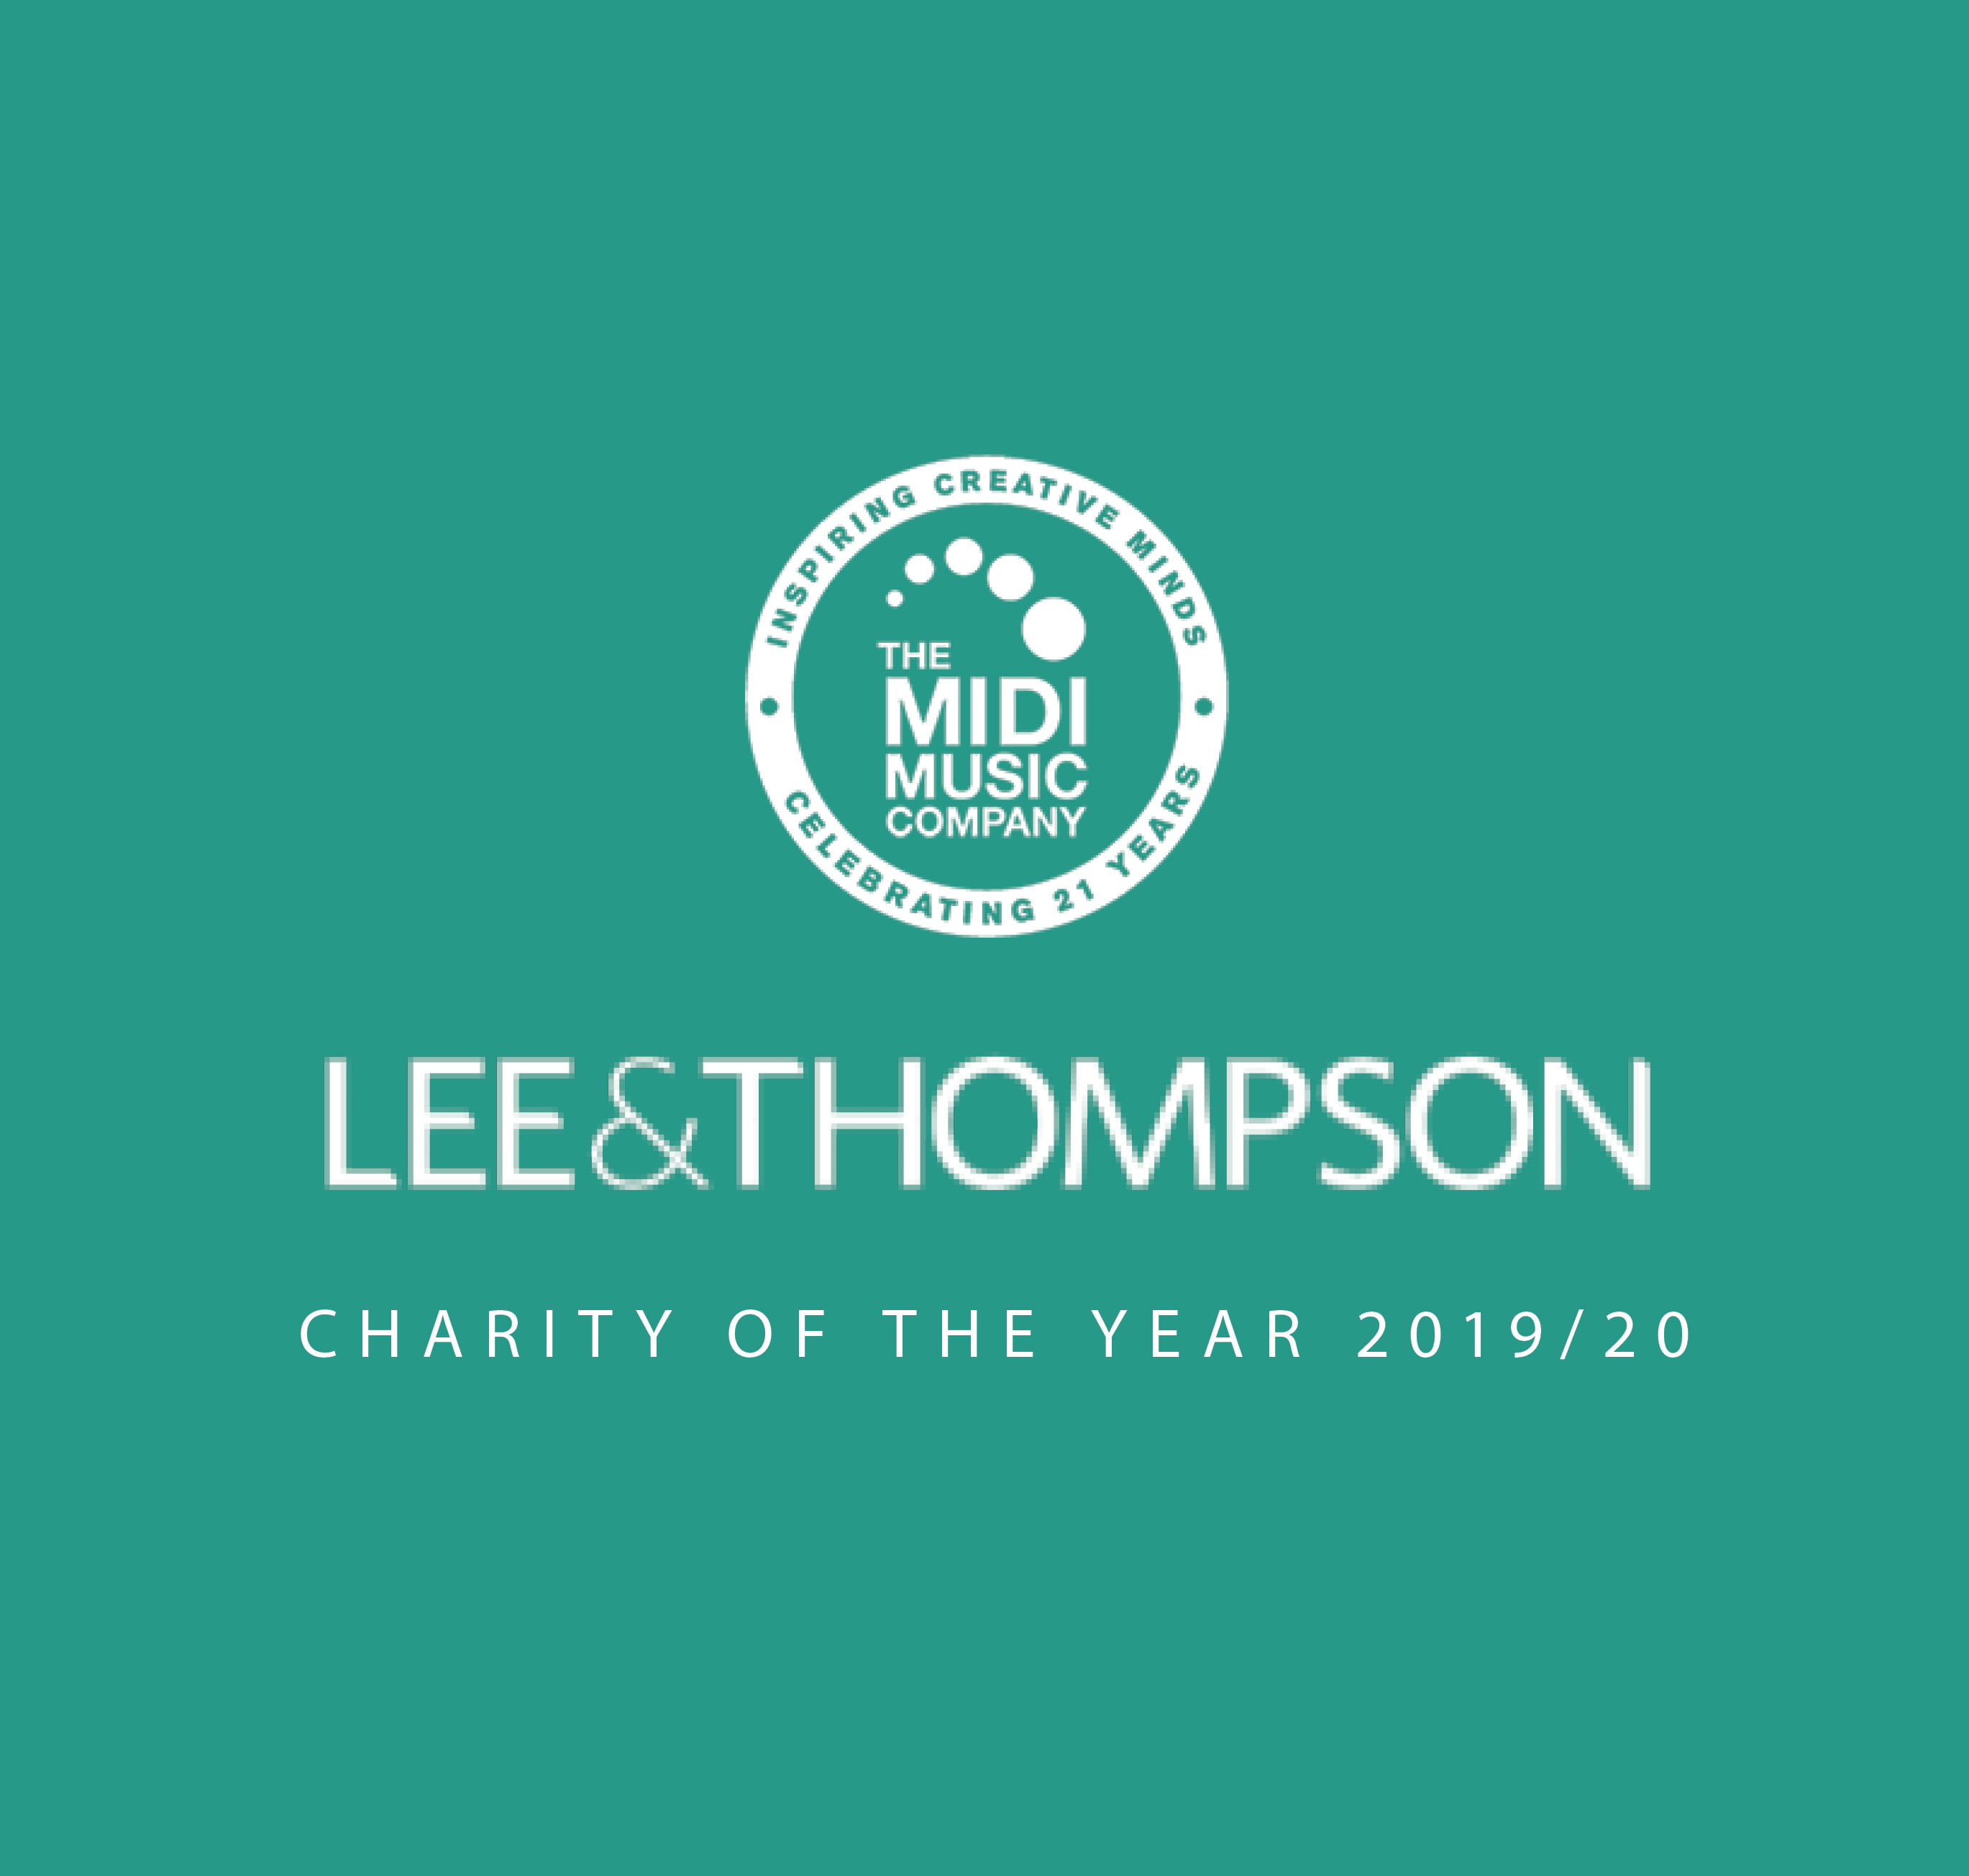 Lee & Thompson